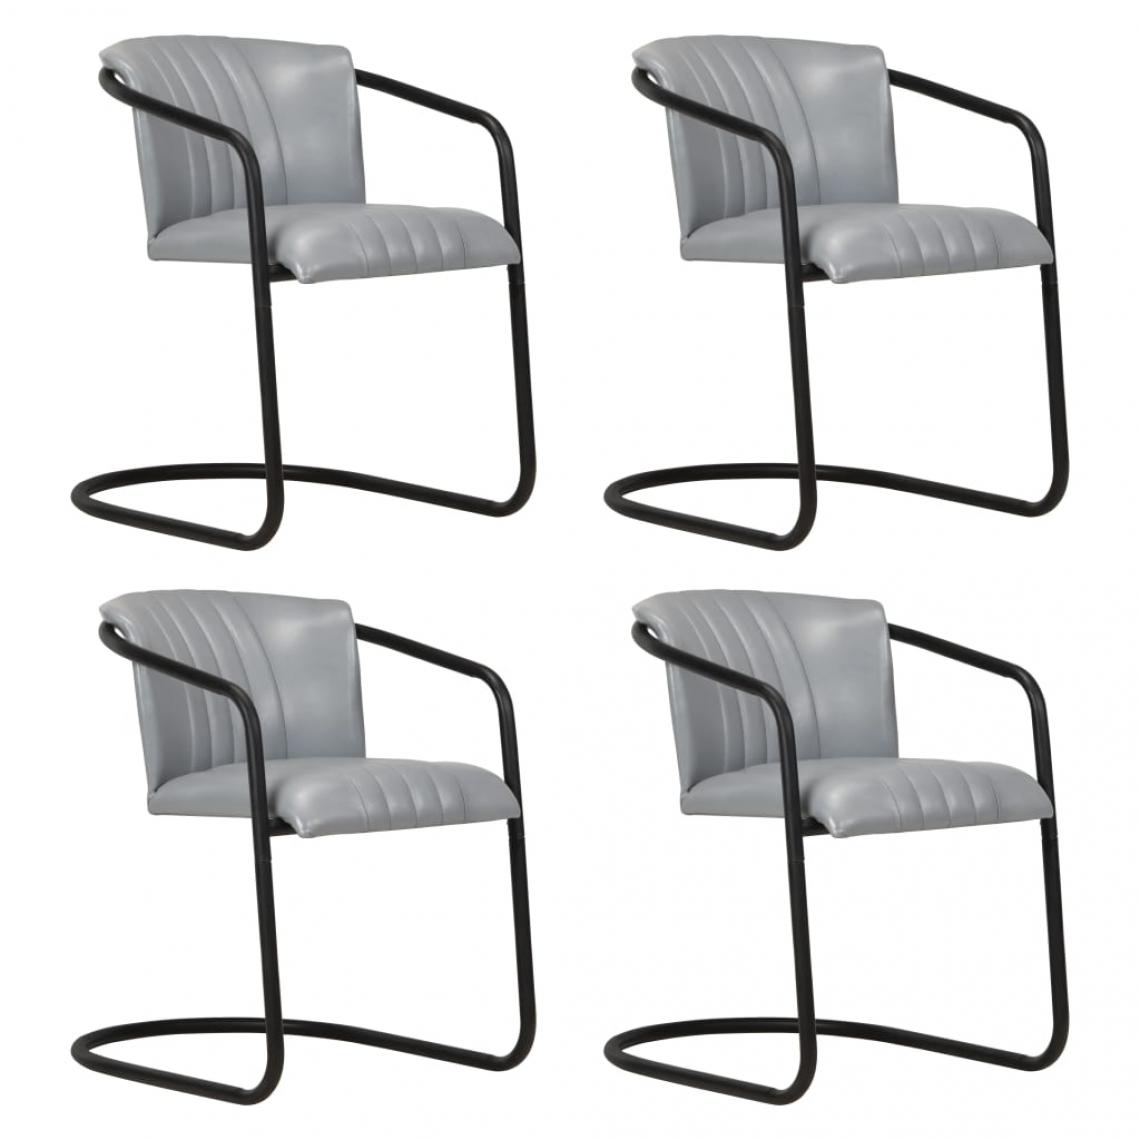 Decoshop26 - Lot de 4 chaises de salle à manger cuisine design moderne cuir véritable gris CDS021535 - Chaises